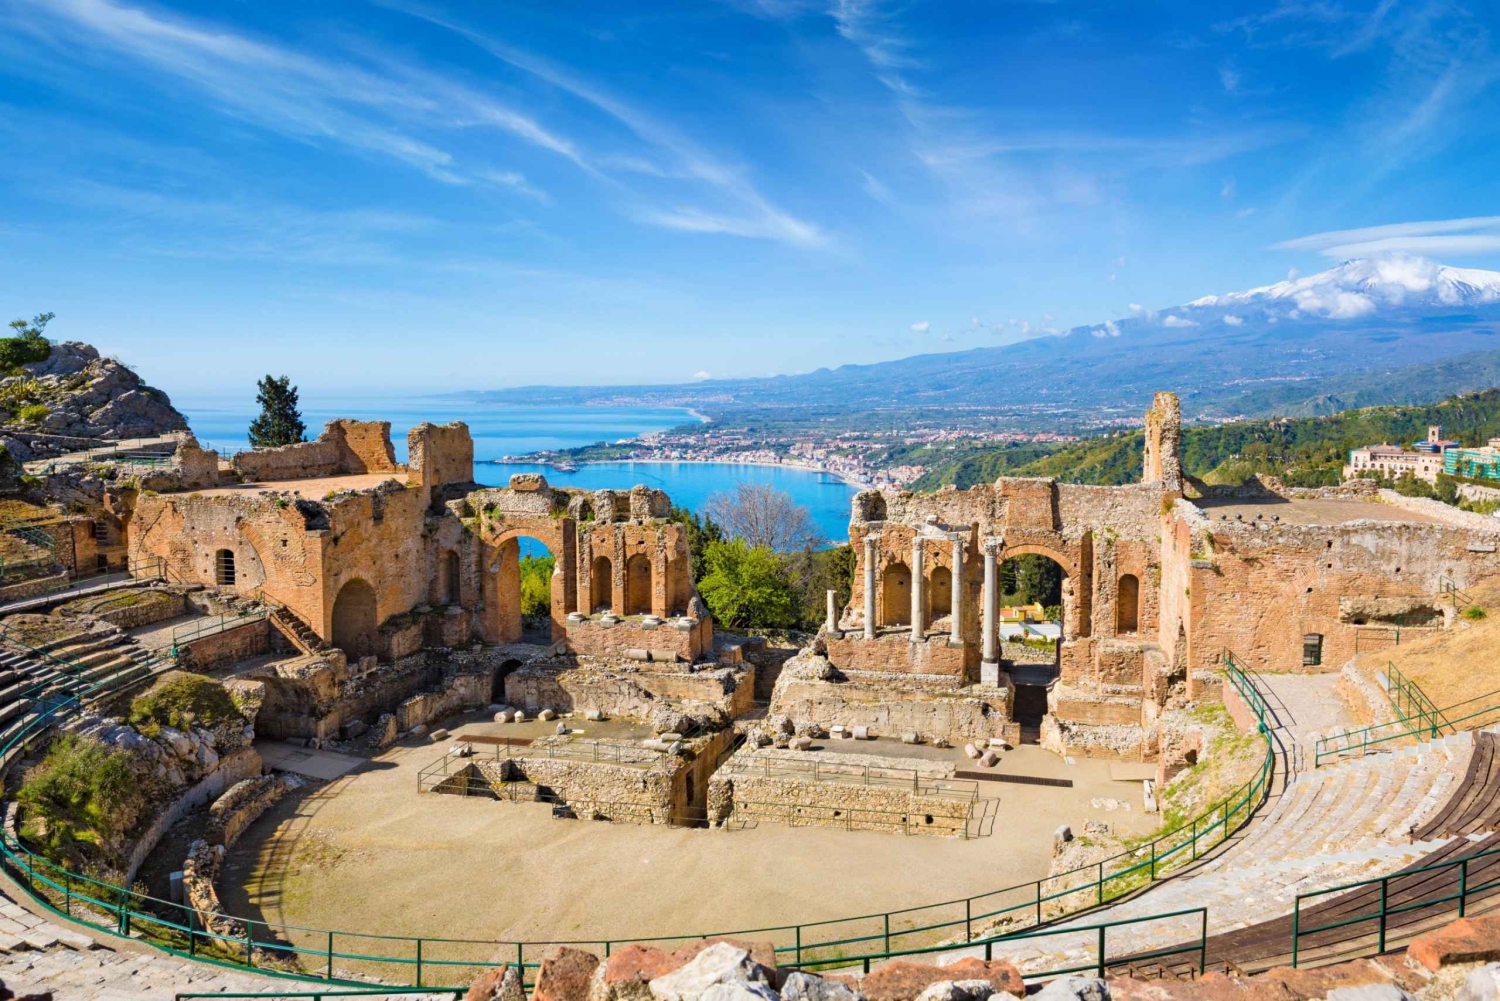 Giardini Naxos, Taormina and Castelmola 5-Hour Tour